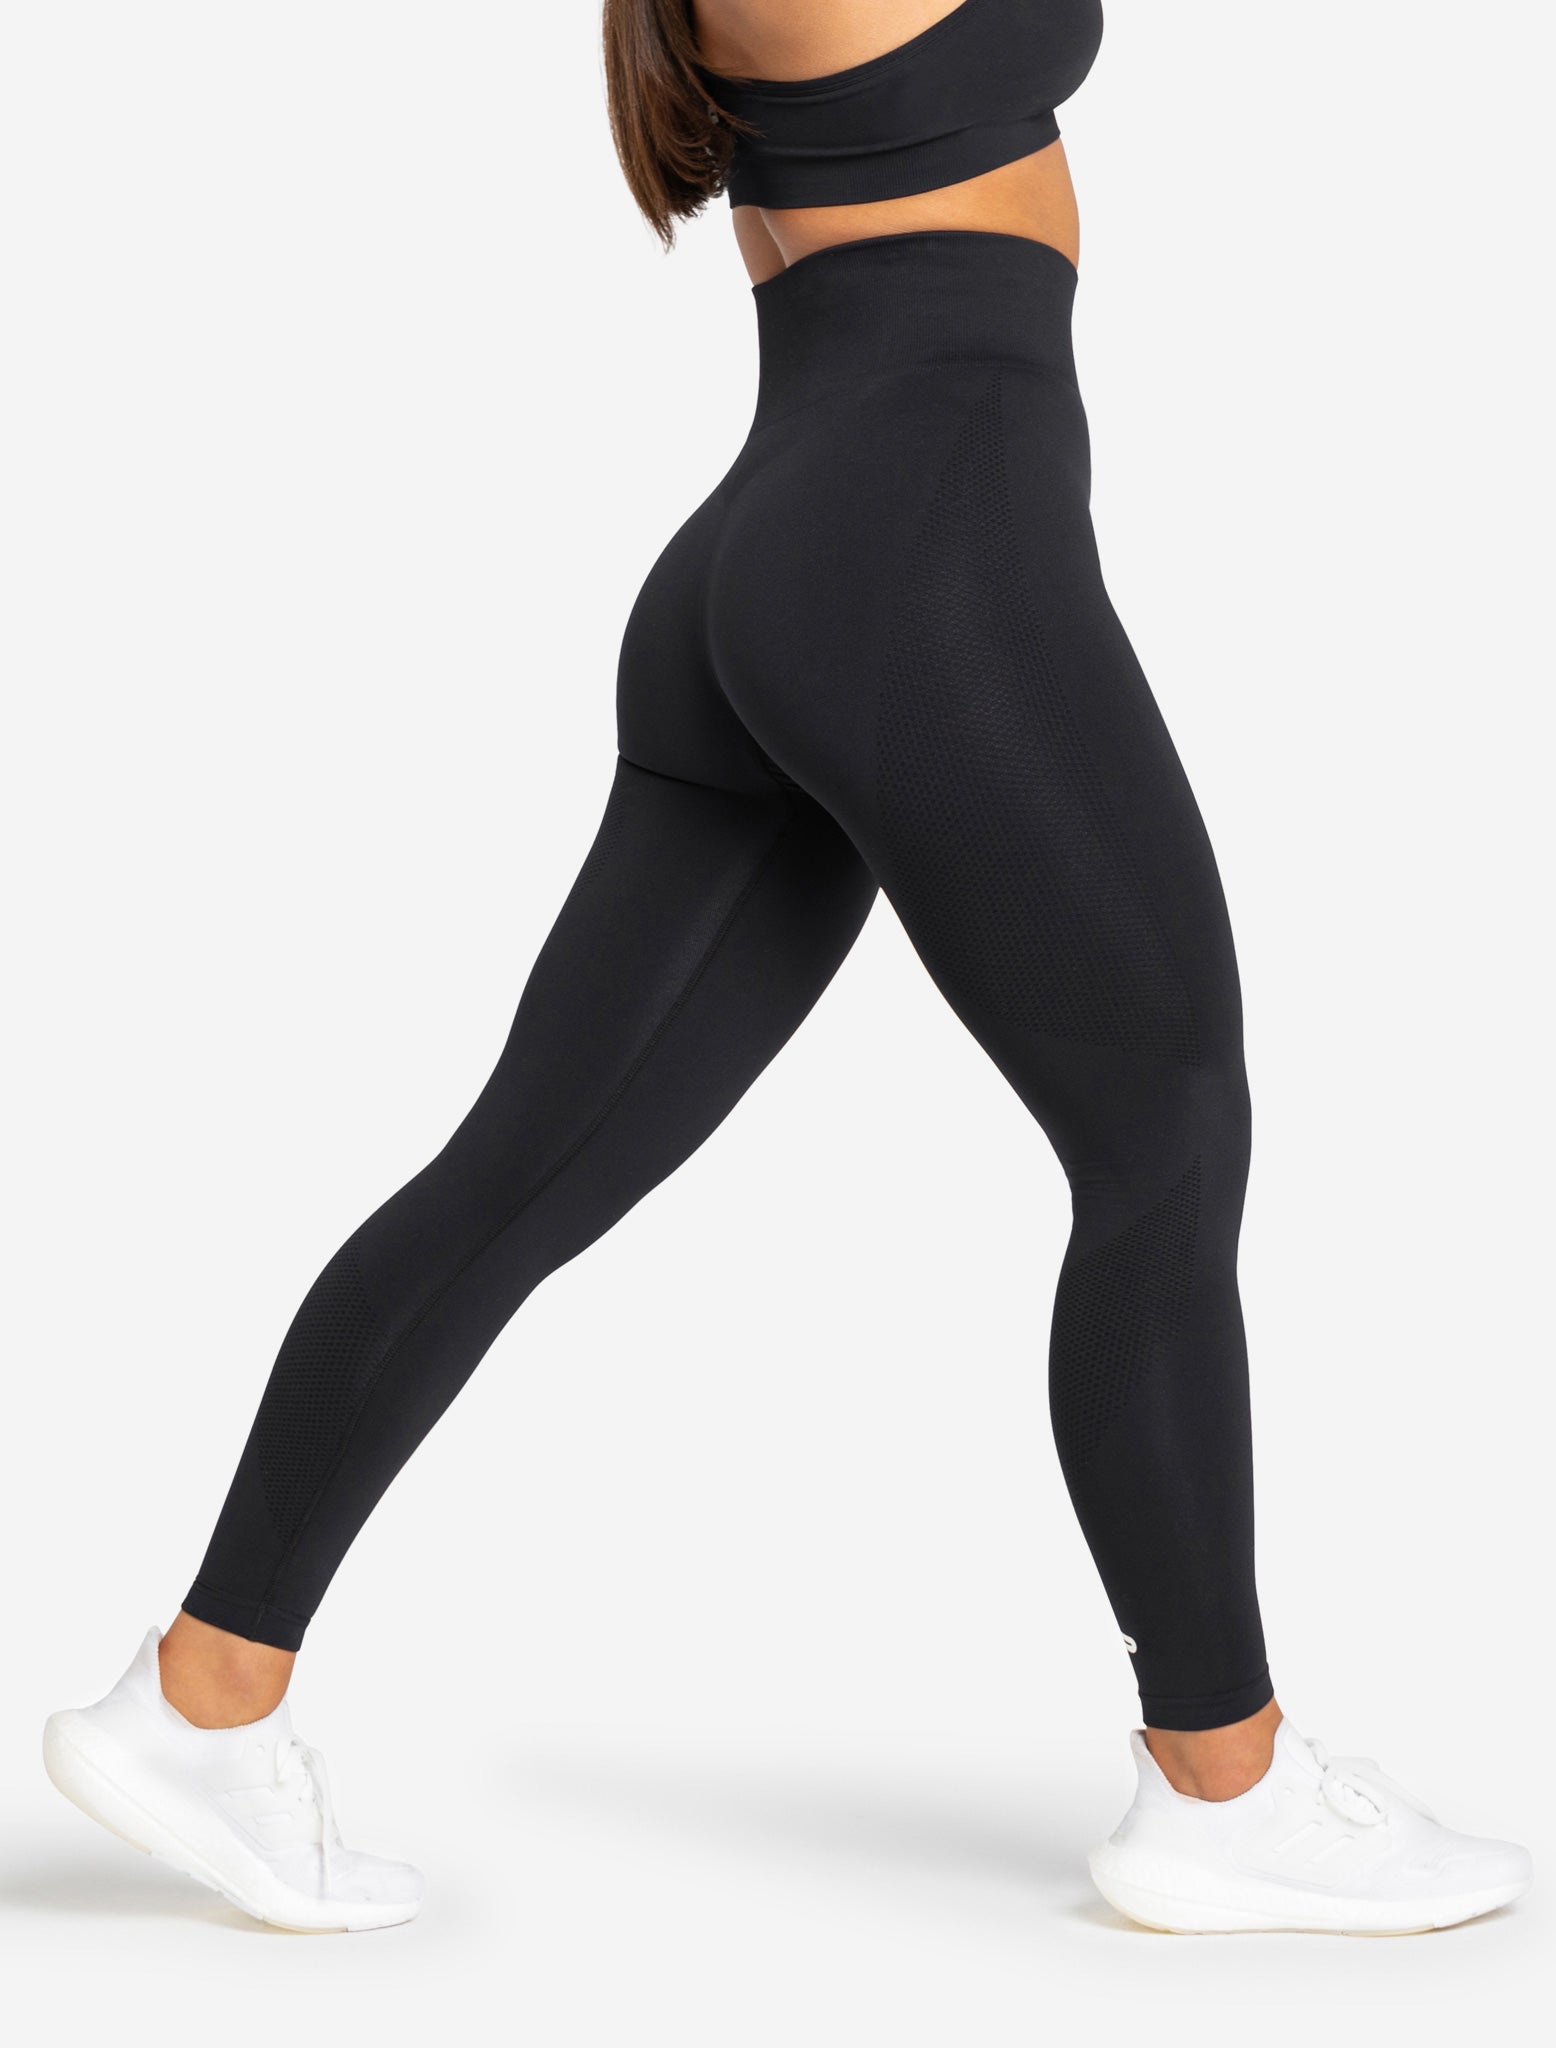 Leggings Sexy Sports Yoga Workout Pants Fashion Black Cut Out Mesh Womens  Hot | eBay